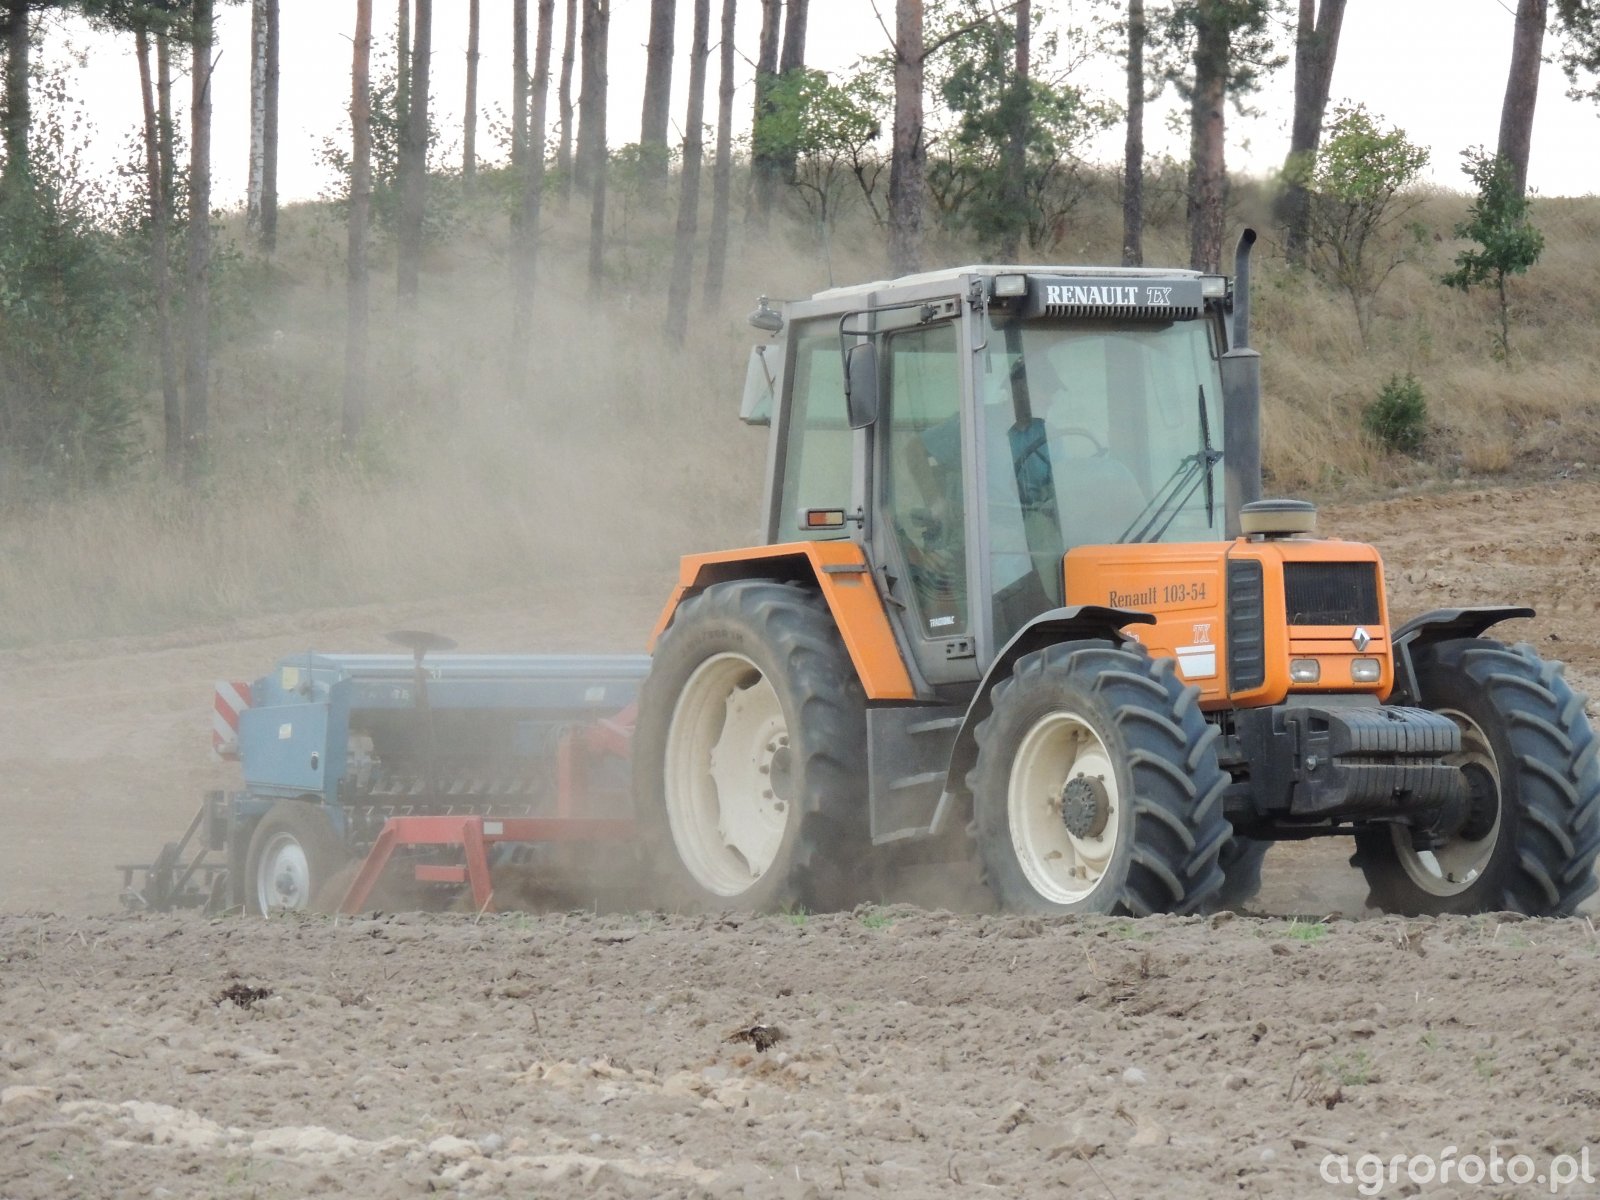 Zdjęcie traktor Renault 10354 TX & Rabe id524995